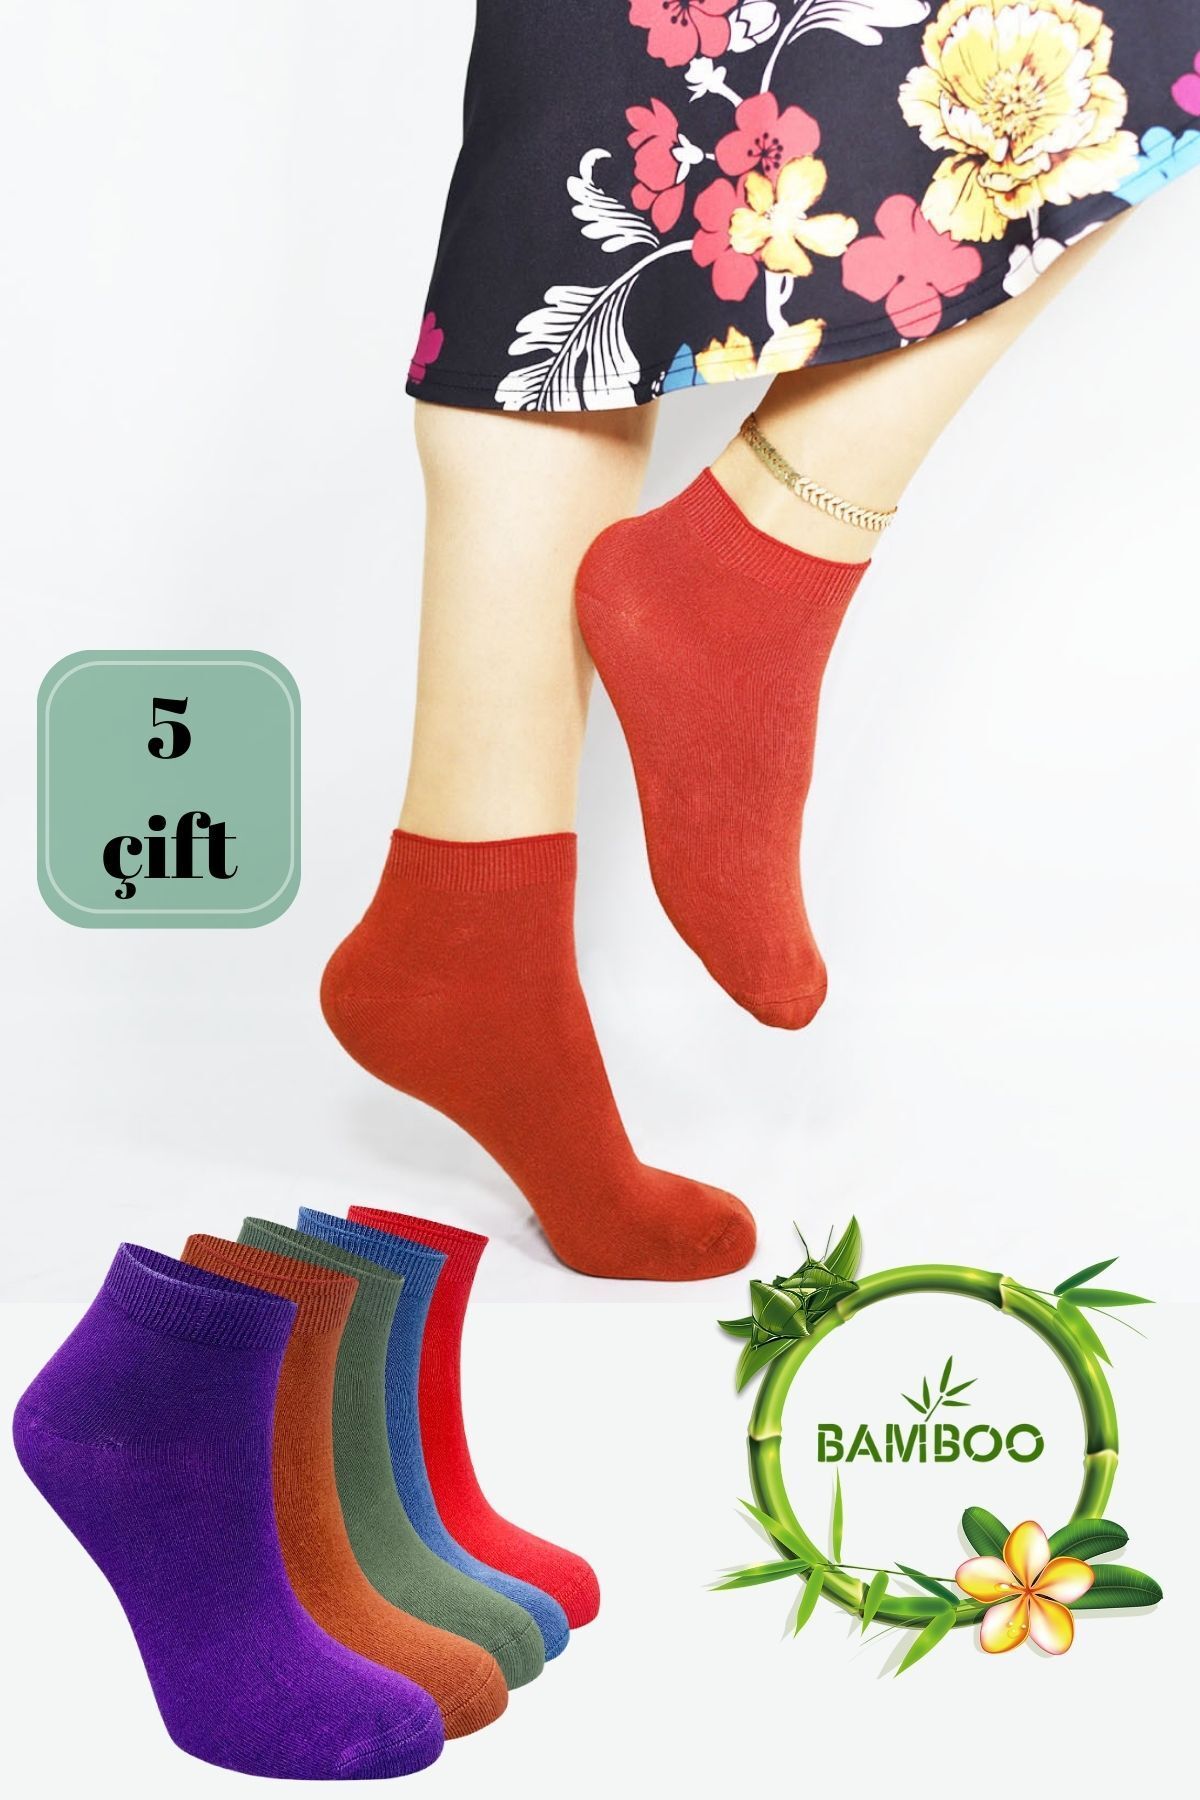 Miss Lana Kadın Kaliteli Bambu Patik Çorap (5 ADET) Dikişsiz Görünmez Parfümlü Kısa Model Çorap